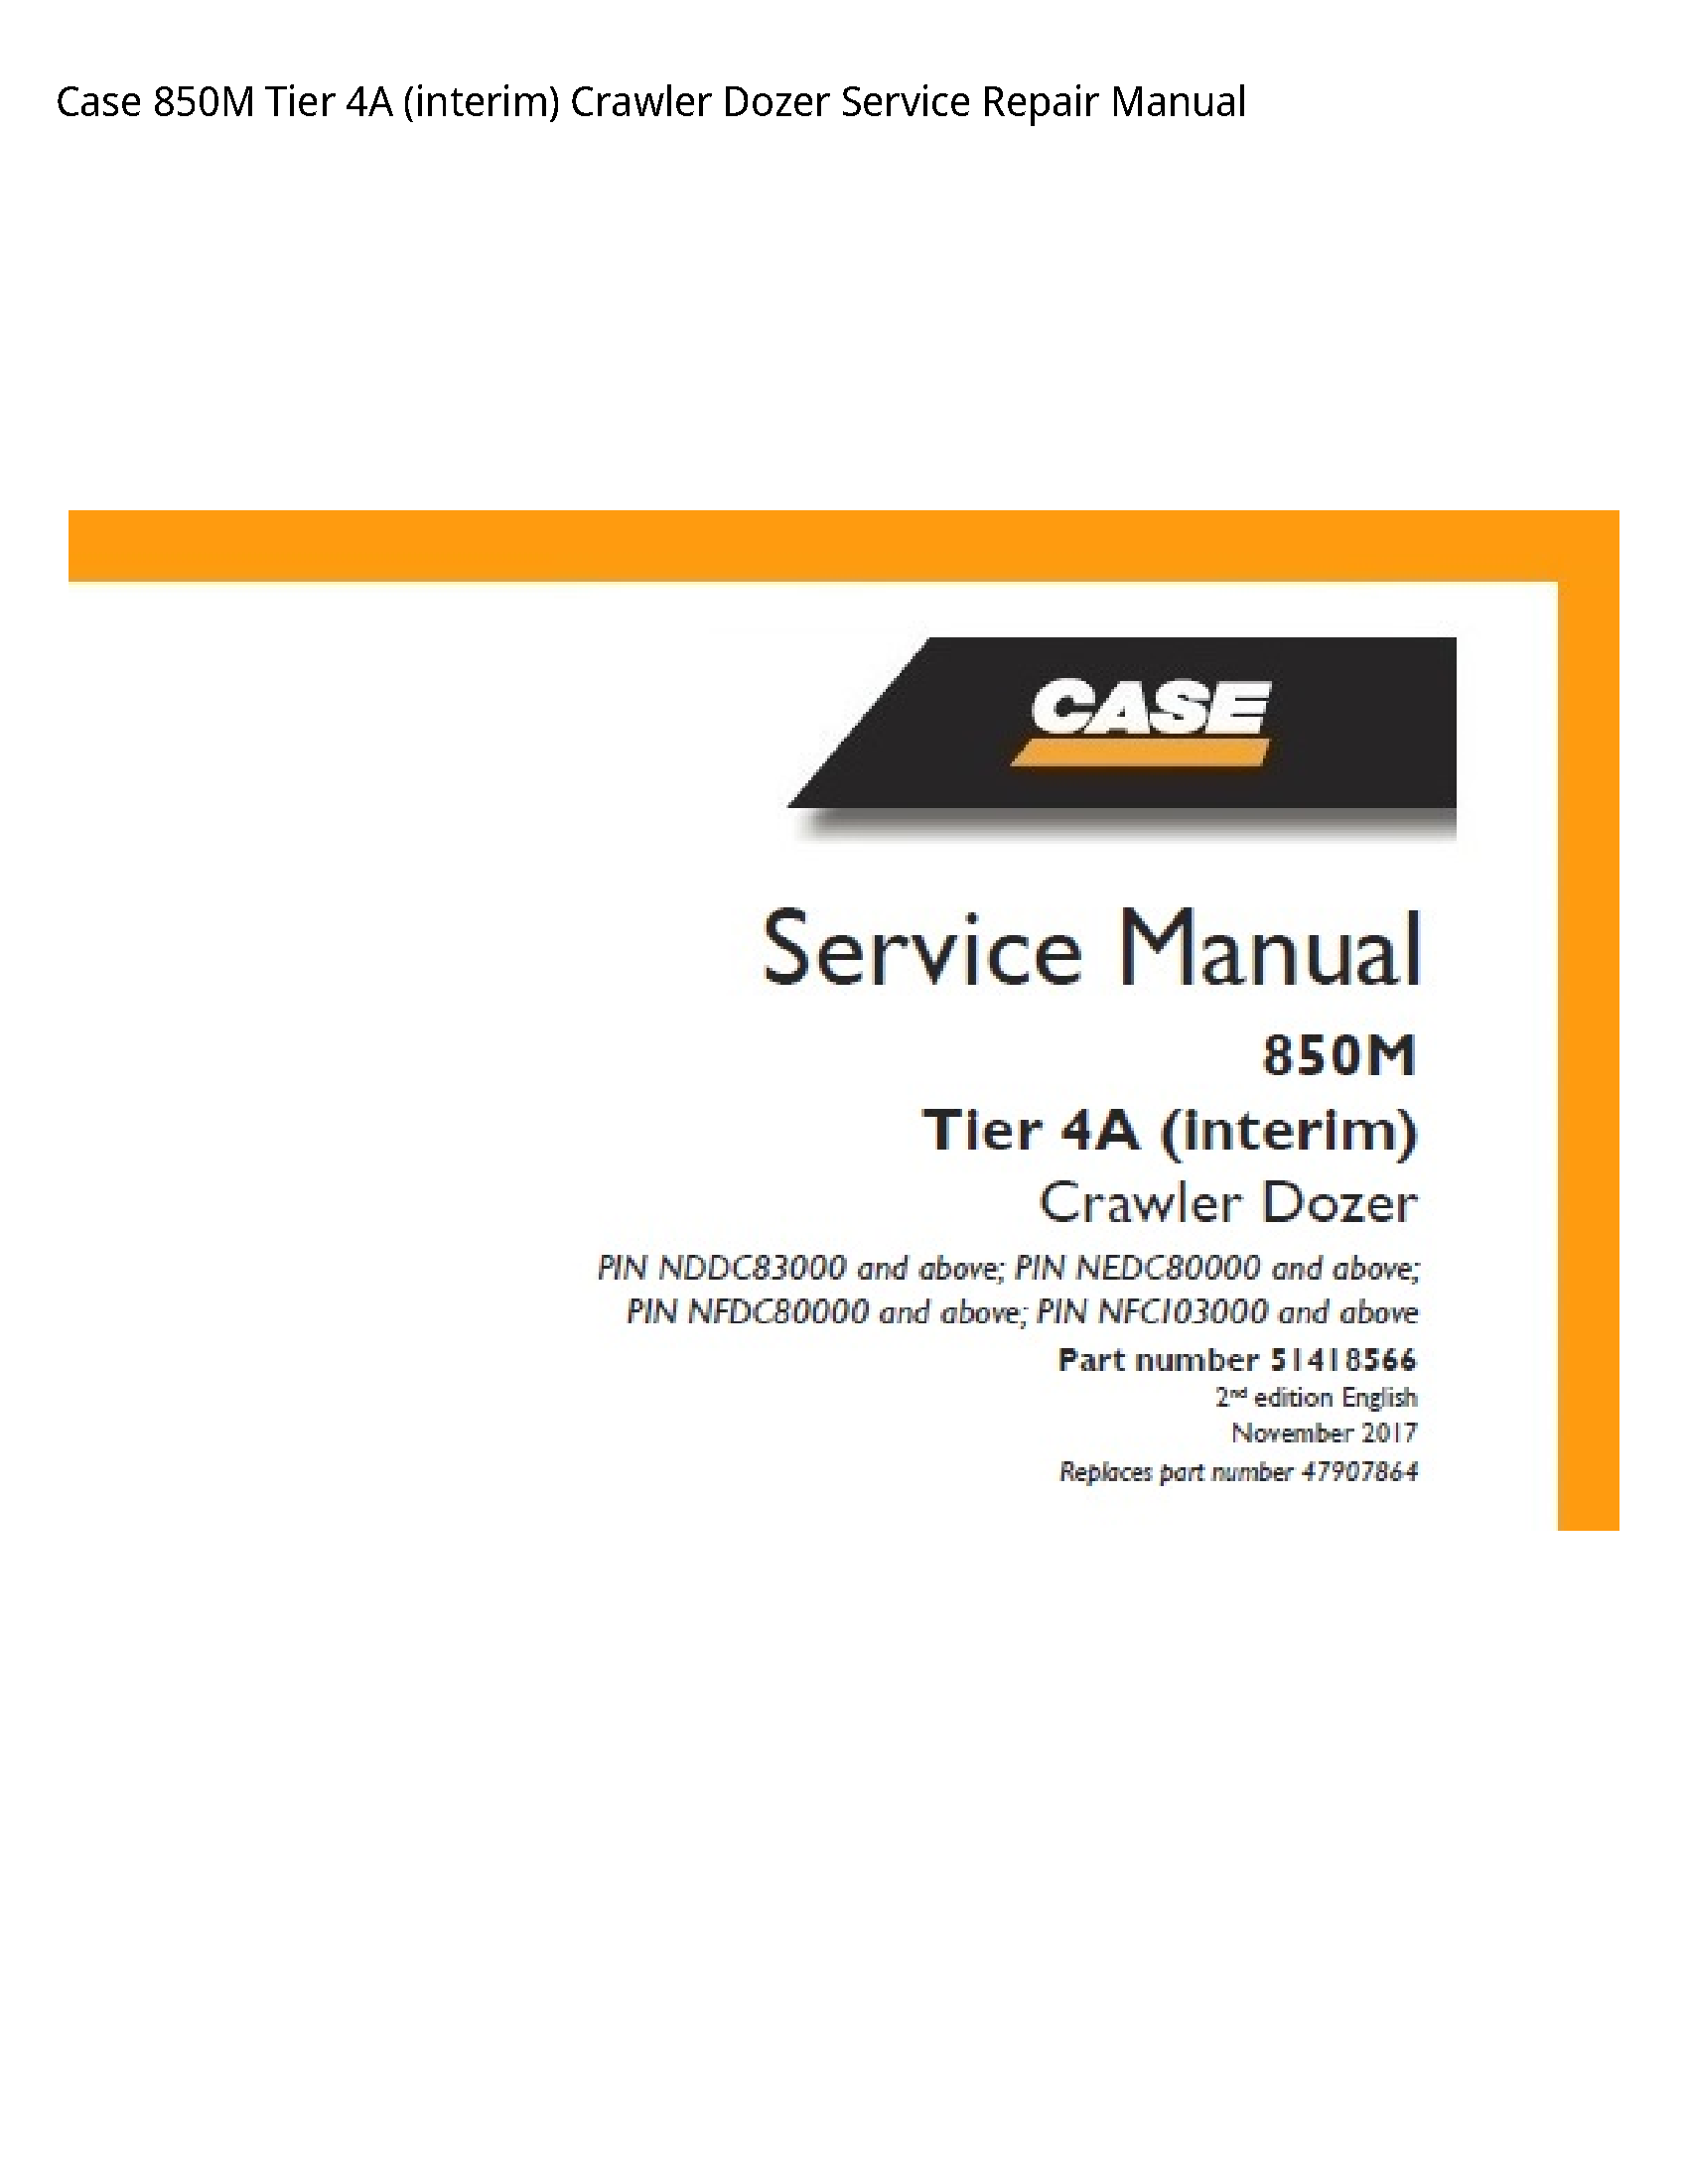 Case/Case IH 850M Tier (interim) Crawler Dozer manual